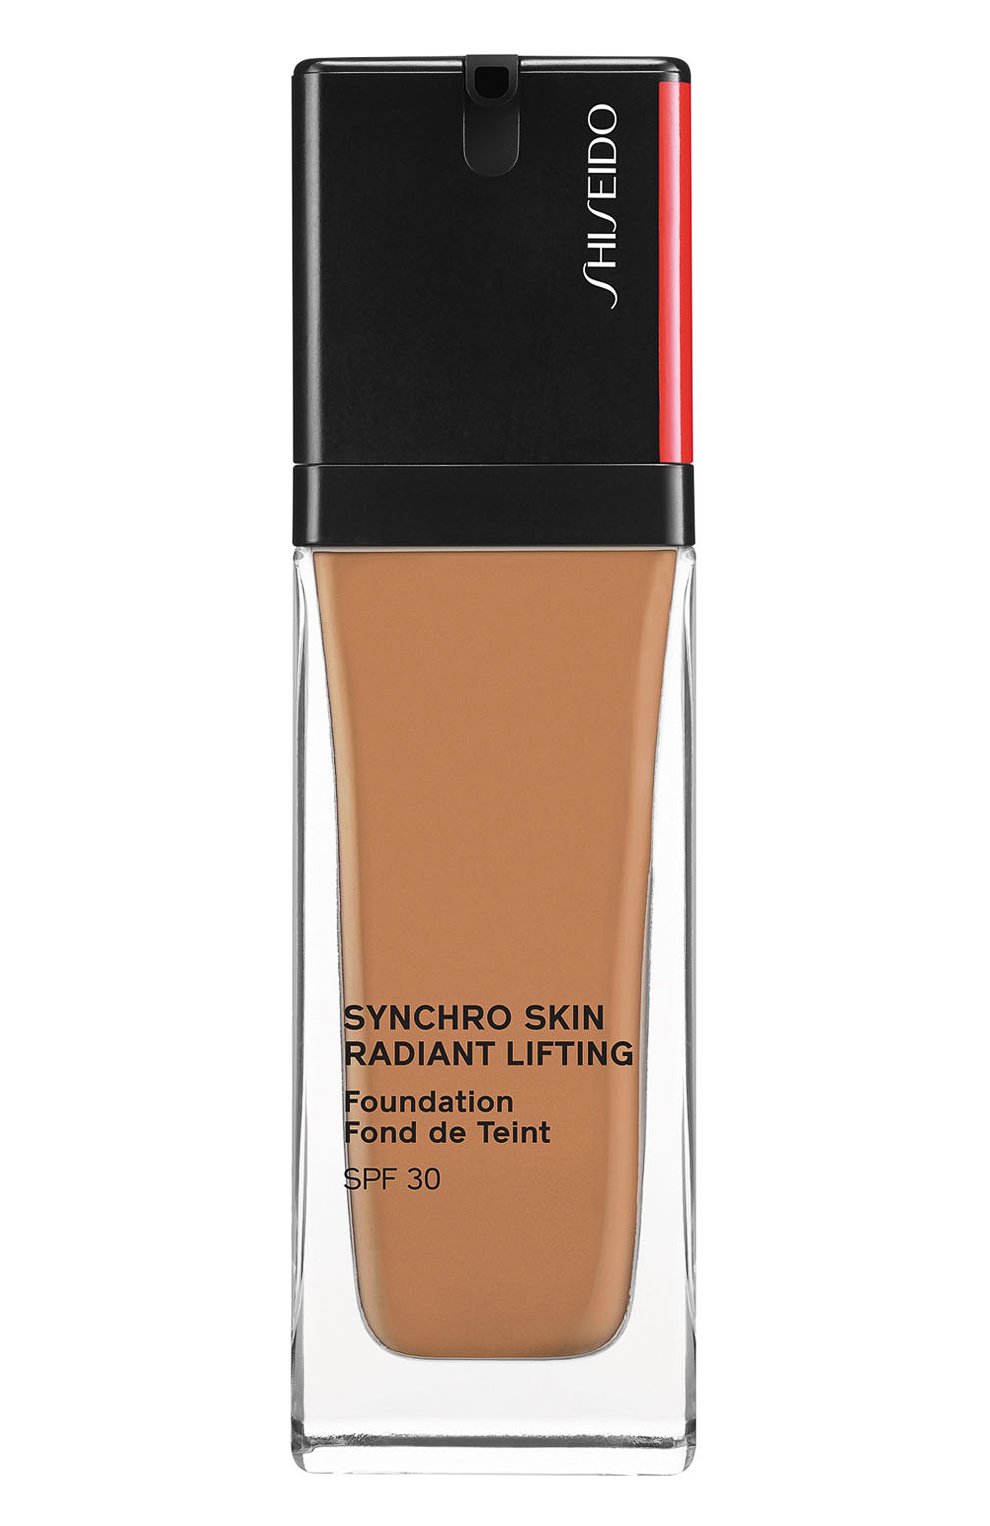 Shiseido synchro skin radiant. Шисейдо тональный крем с эффектом сияния. Shiseido. Radiant Lifting Foundation тон 240. Shiseido Synchro Skin Radiant Lifting Foundation цвета. Палитра Shiseido Synchro Skin Radiant Lifting Foundation SPF 30.